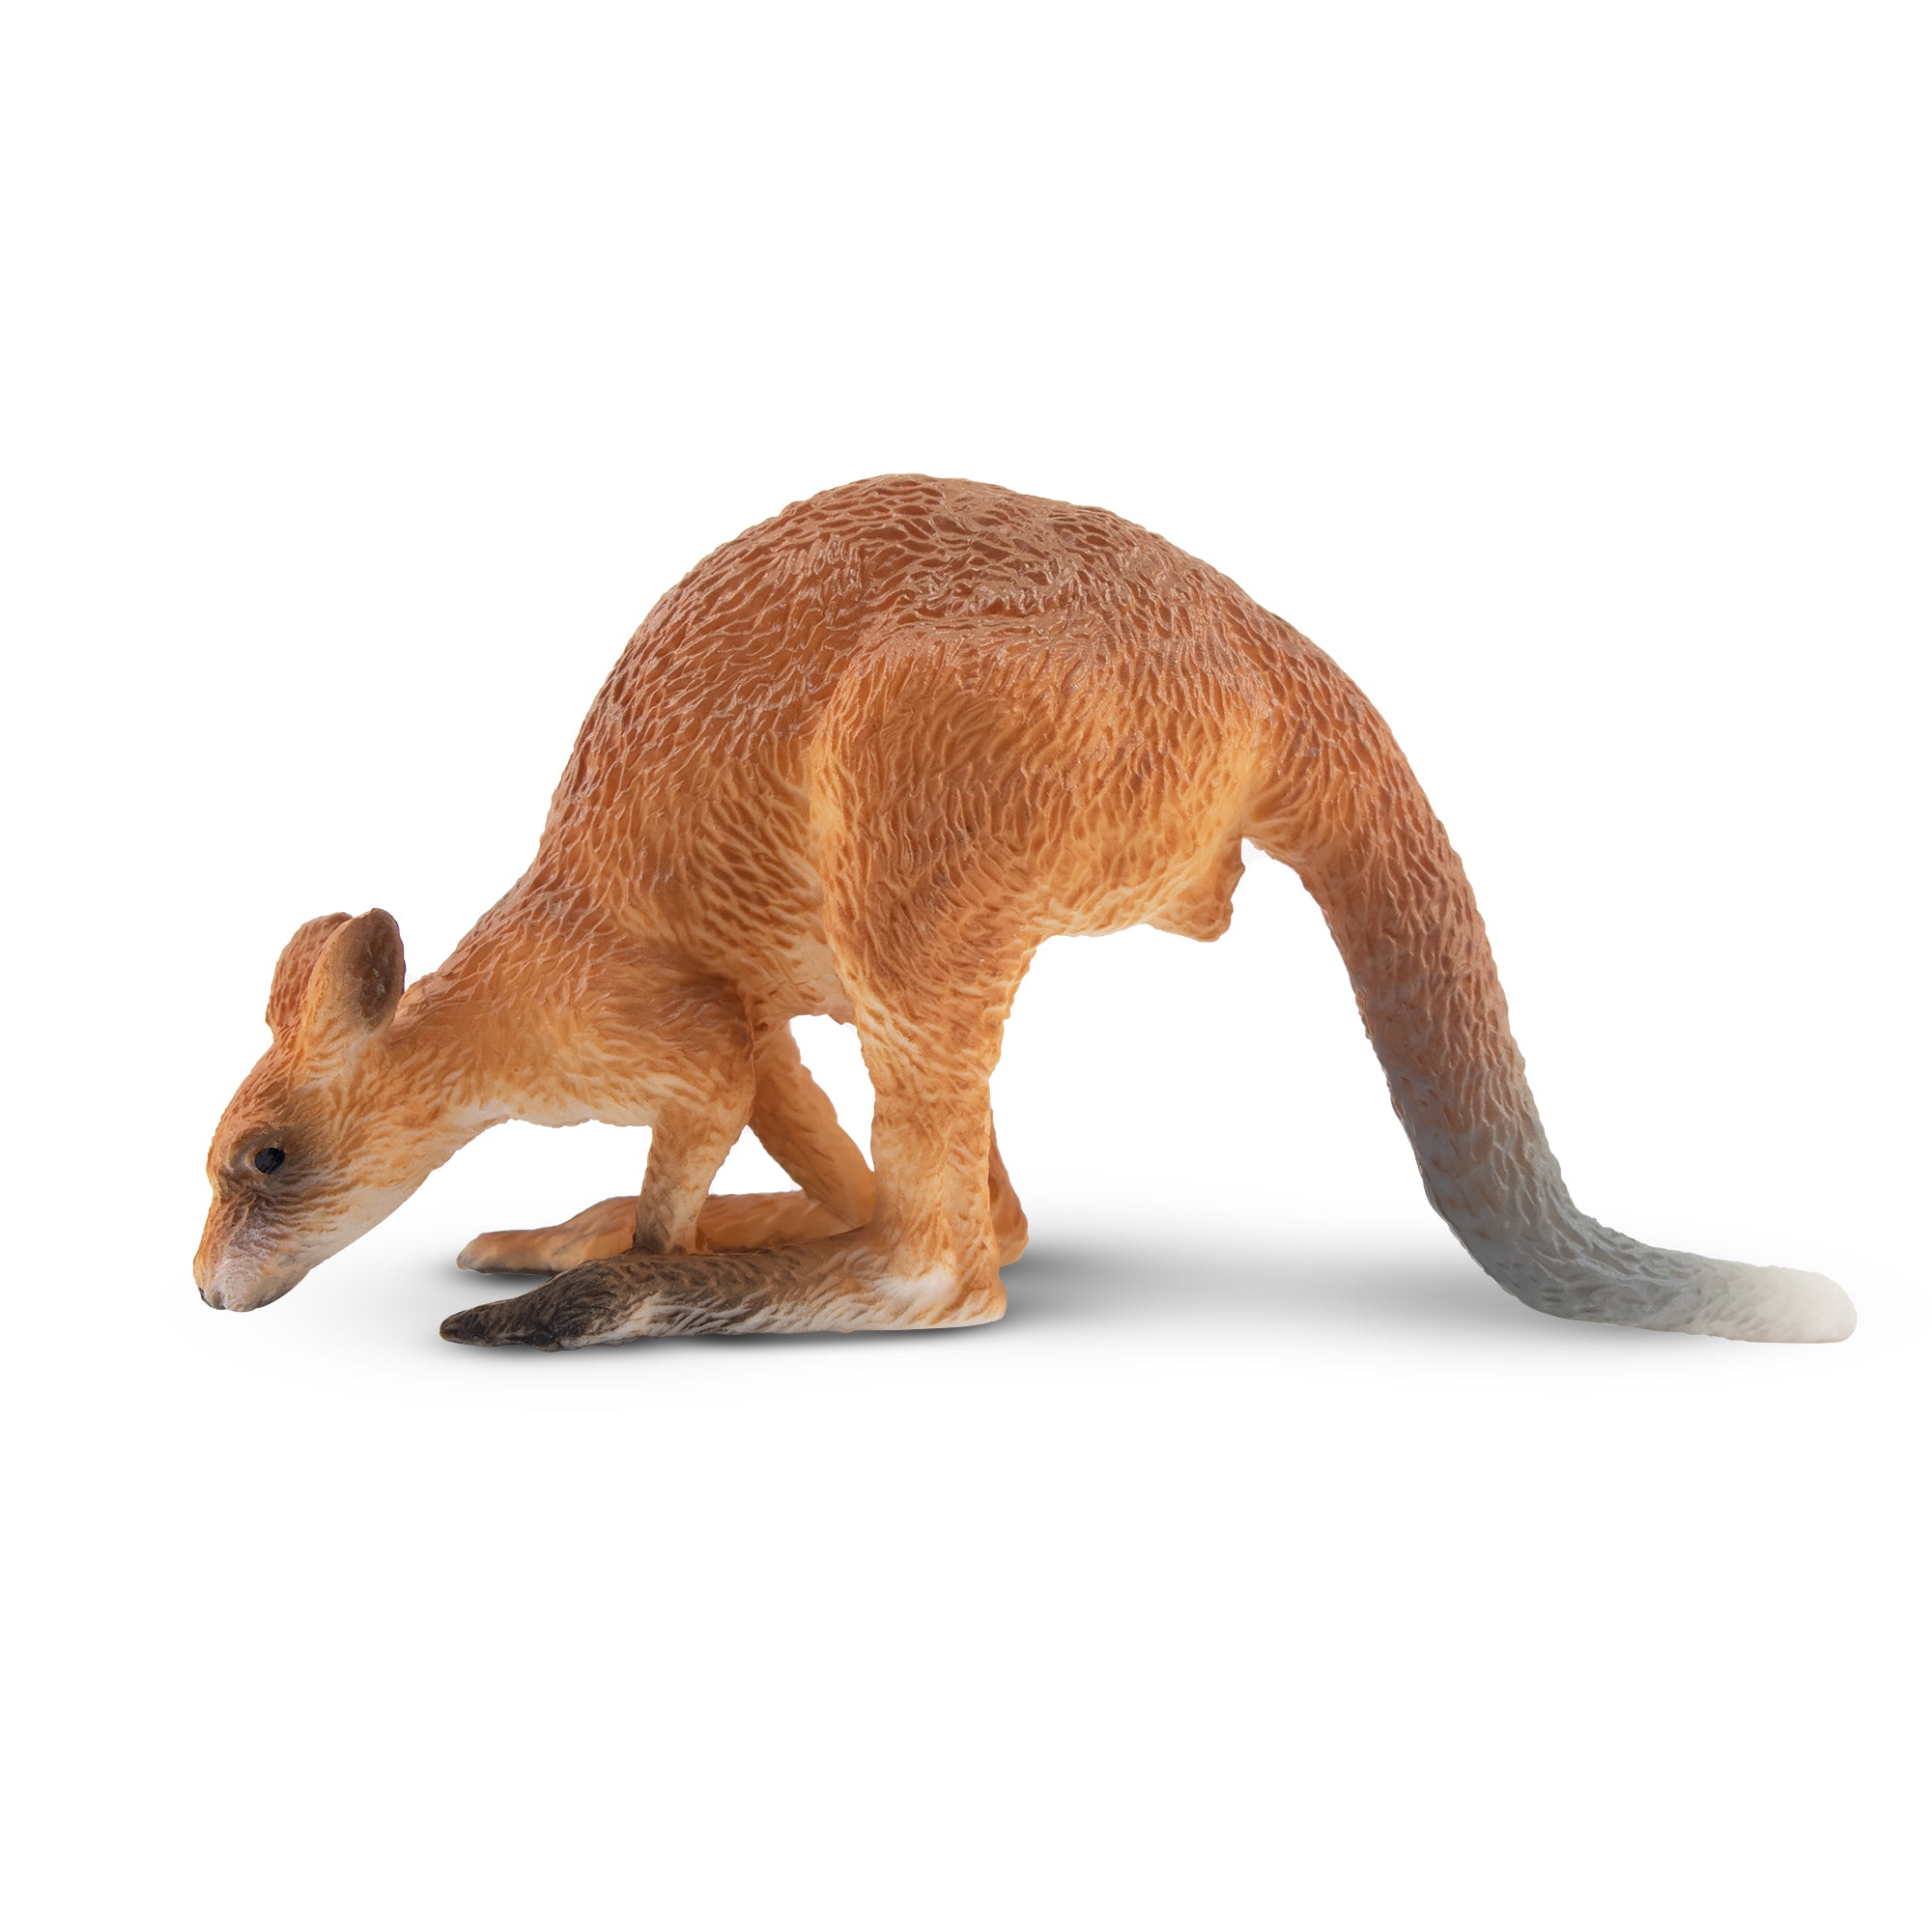 Toymany Crouching Kangaroo